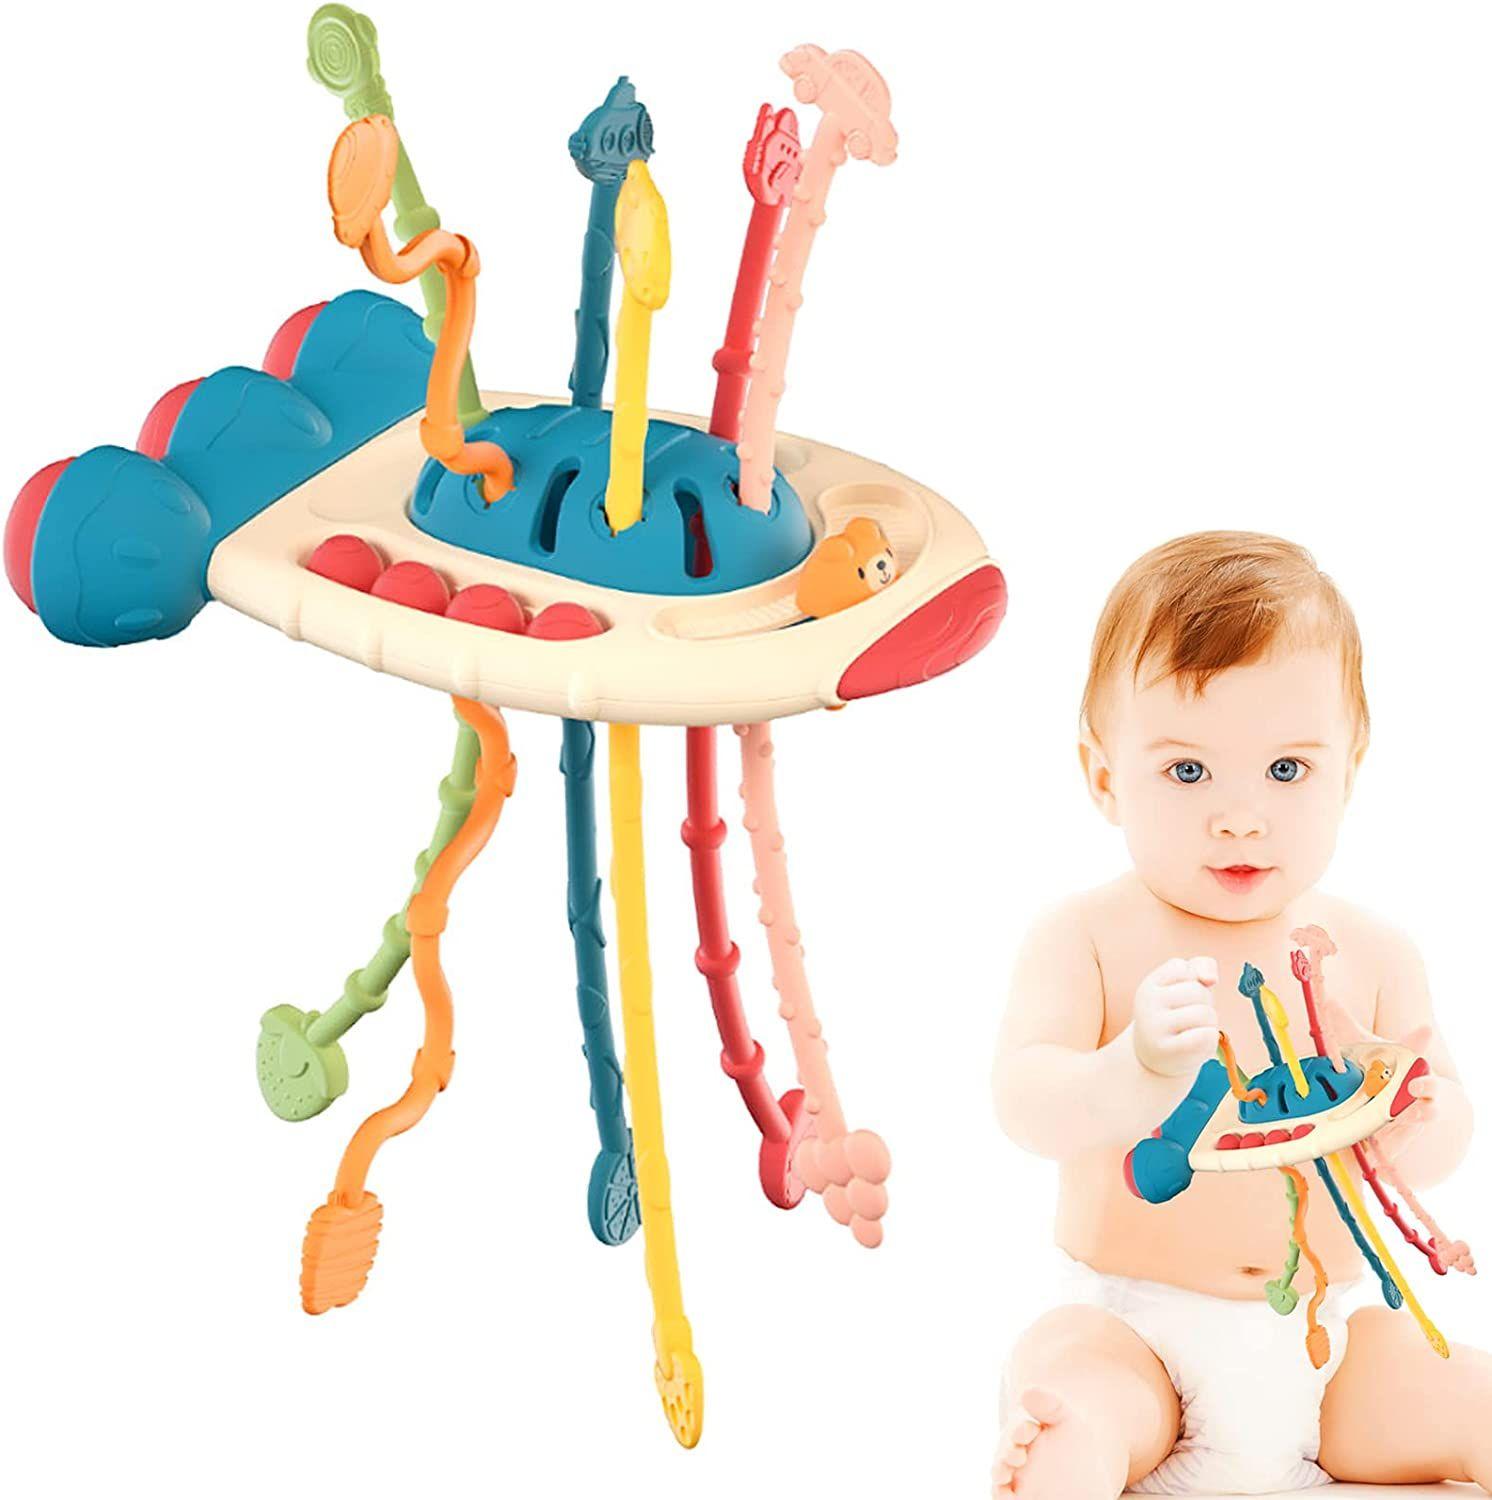 Développer jouet de dentition Montessori jouets sensoriels bébé jouet 1 2 3  ans Silicone tirer chaîne jouets éducatifs pour bébés 0 12 mois 